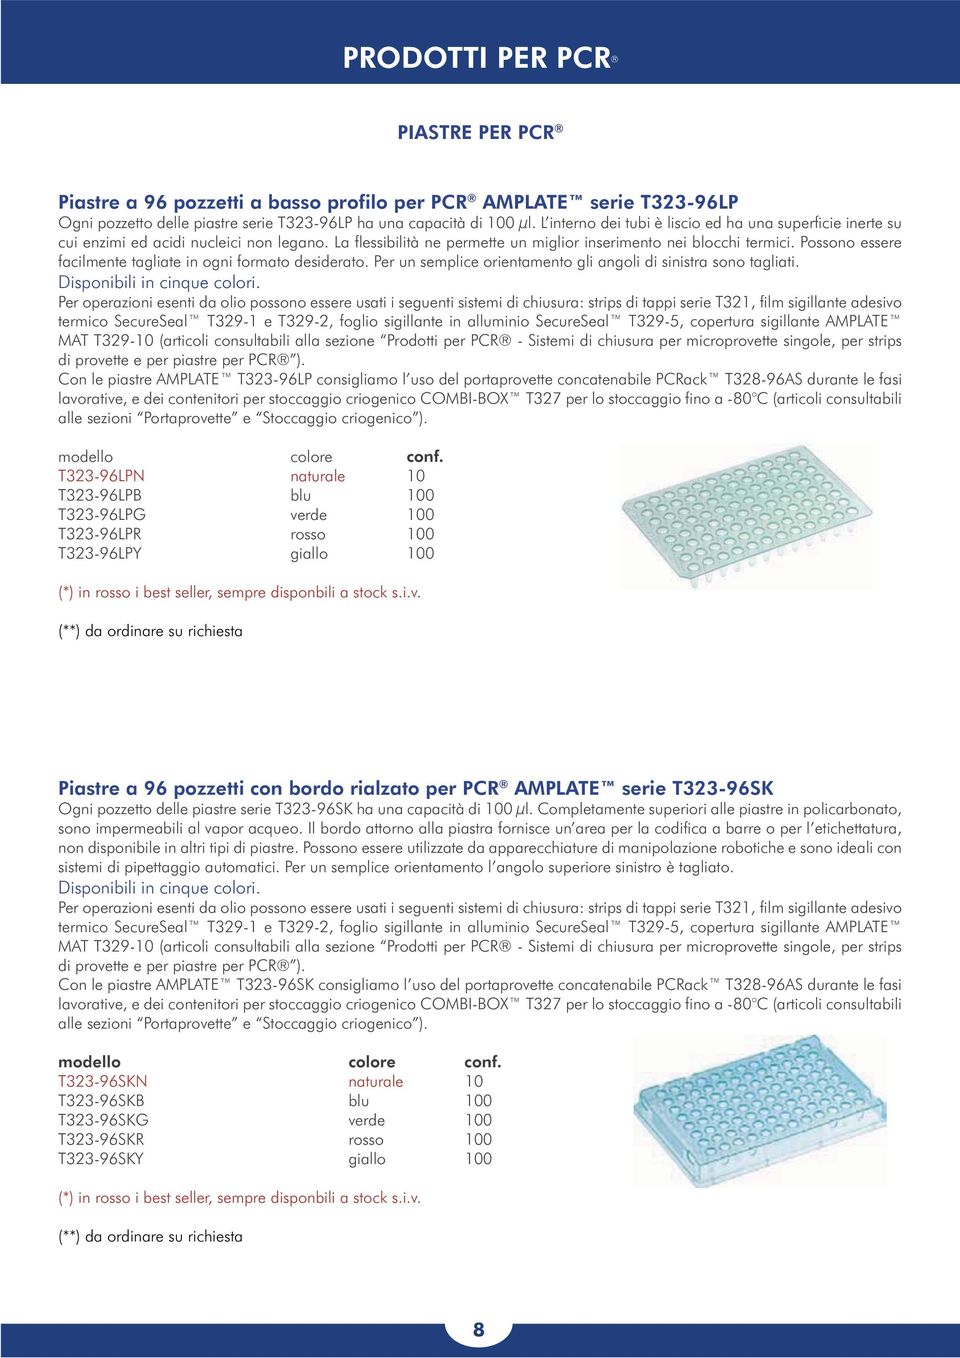 00 334.00 334.00 Piastre a 96 pozzetti con bordo rialzato per PCR AMPLATE serie T323-96SK sono impermeabili al vapor acqueo.